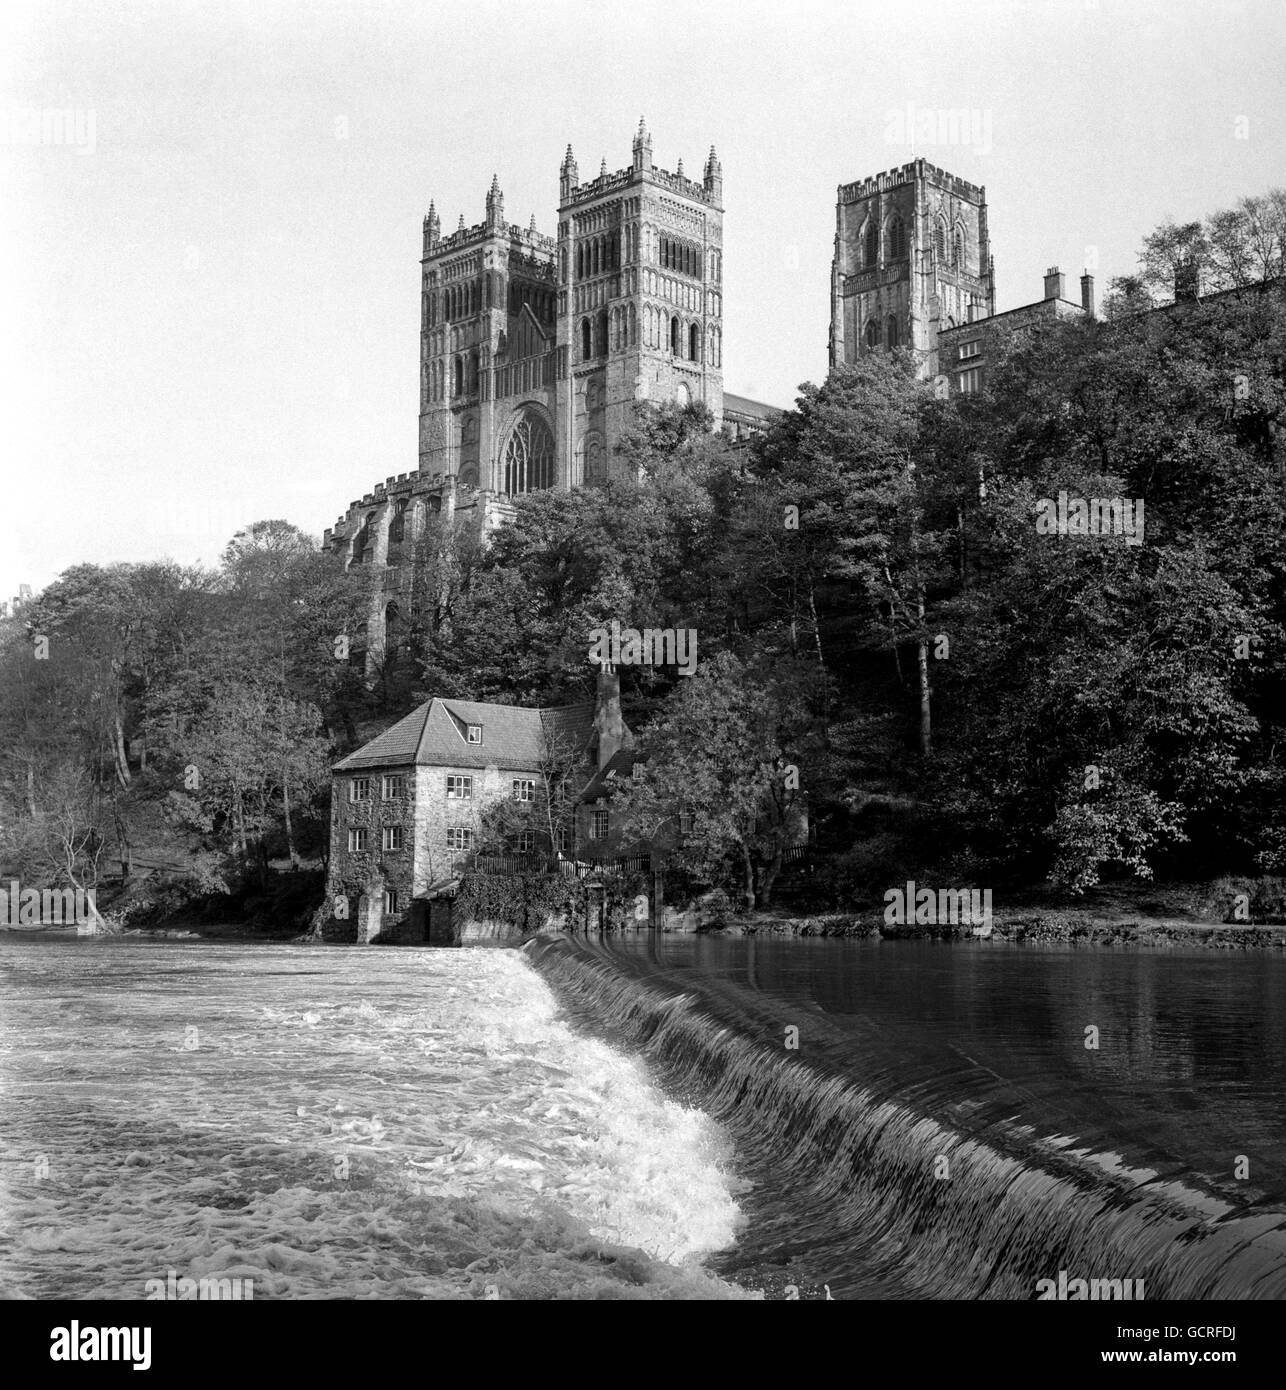 Les tours de la cathédrale de Durham, avec le déversoir de la rivière portent en premier plan. L'église de la Cathédrale du Christ et la Bienheureuse Marie la Vierge a été construite entre 1093 et 1133 et contient le tombeau de l'un des premiers historiens d'Angleterre, le Vénérable Bède. Banque D'Images